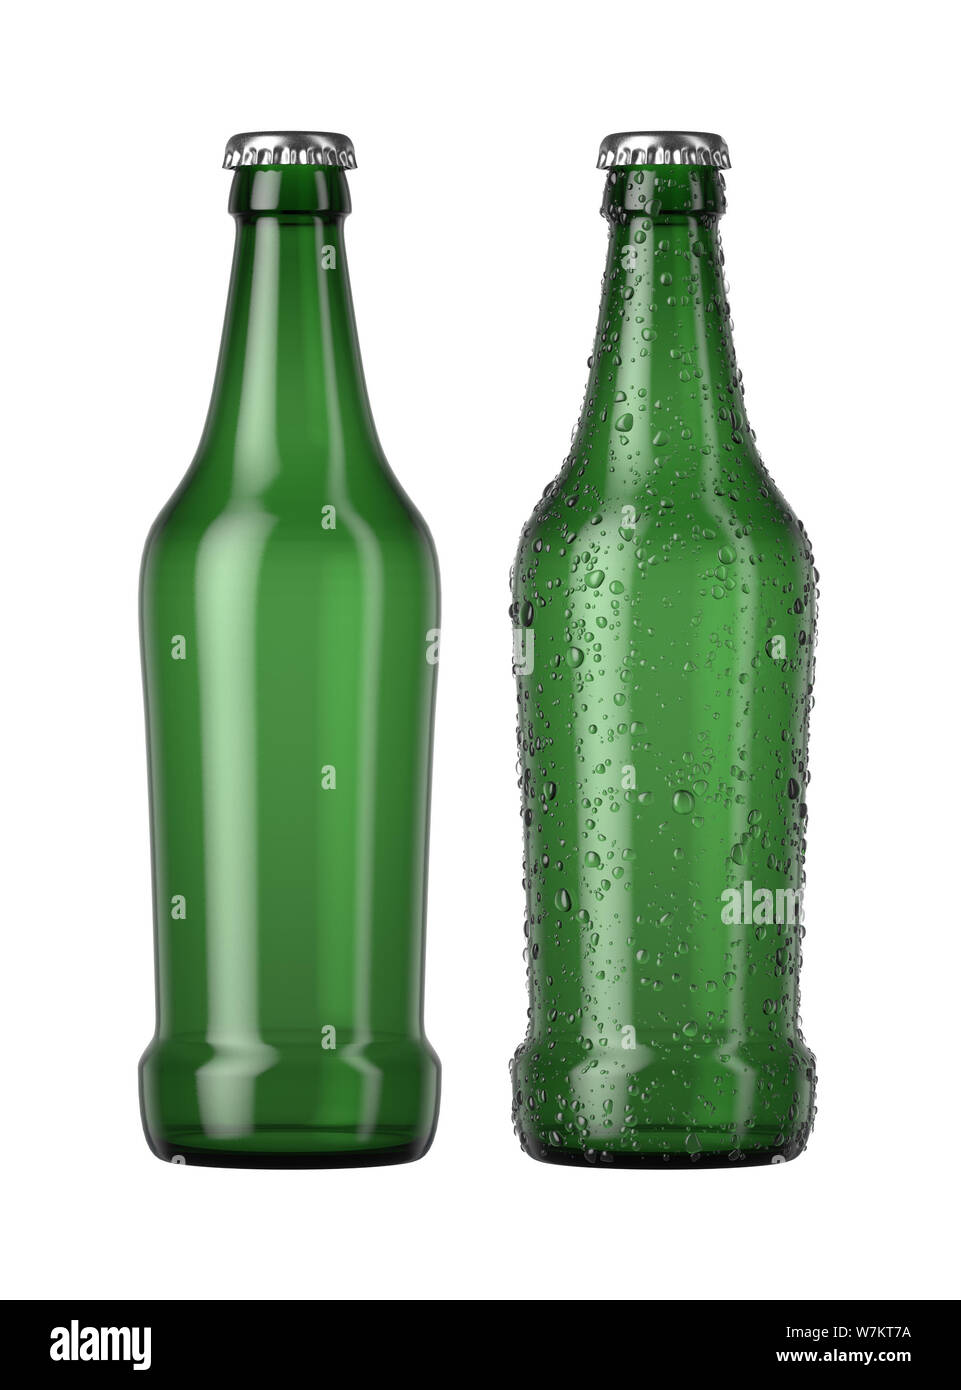 Ein schlichtes grünes Glas Bier Flasche neben einem anderen mit Tröpfchen von Kondensation auf einer isolierten weißen studio Hintergrund - 3D-Rendering Stockfoto